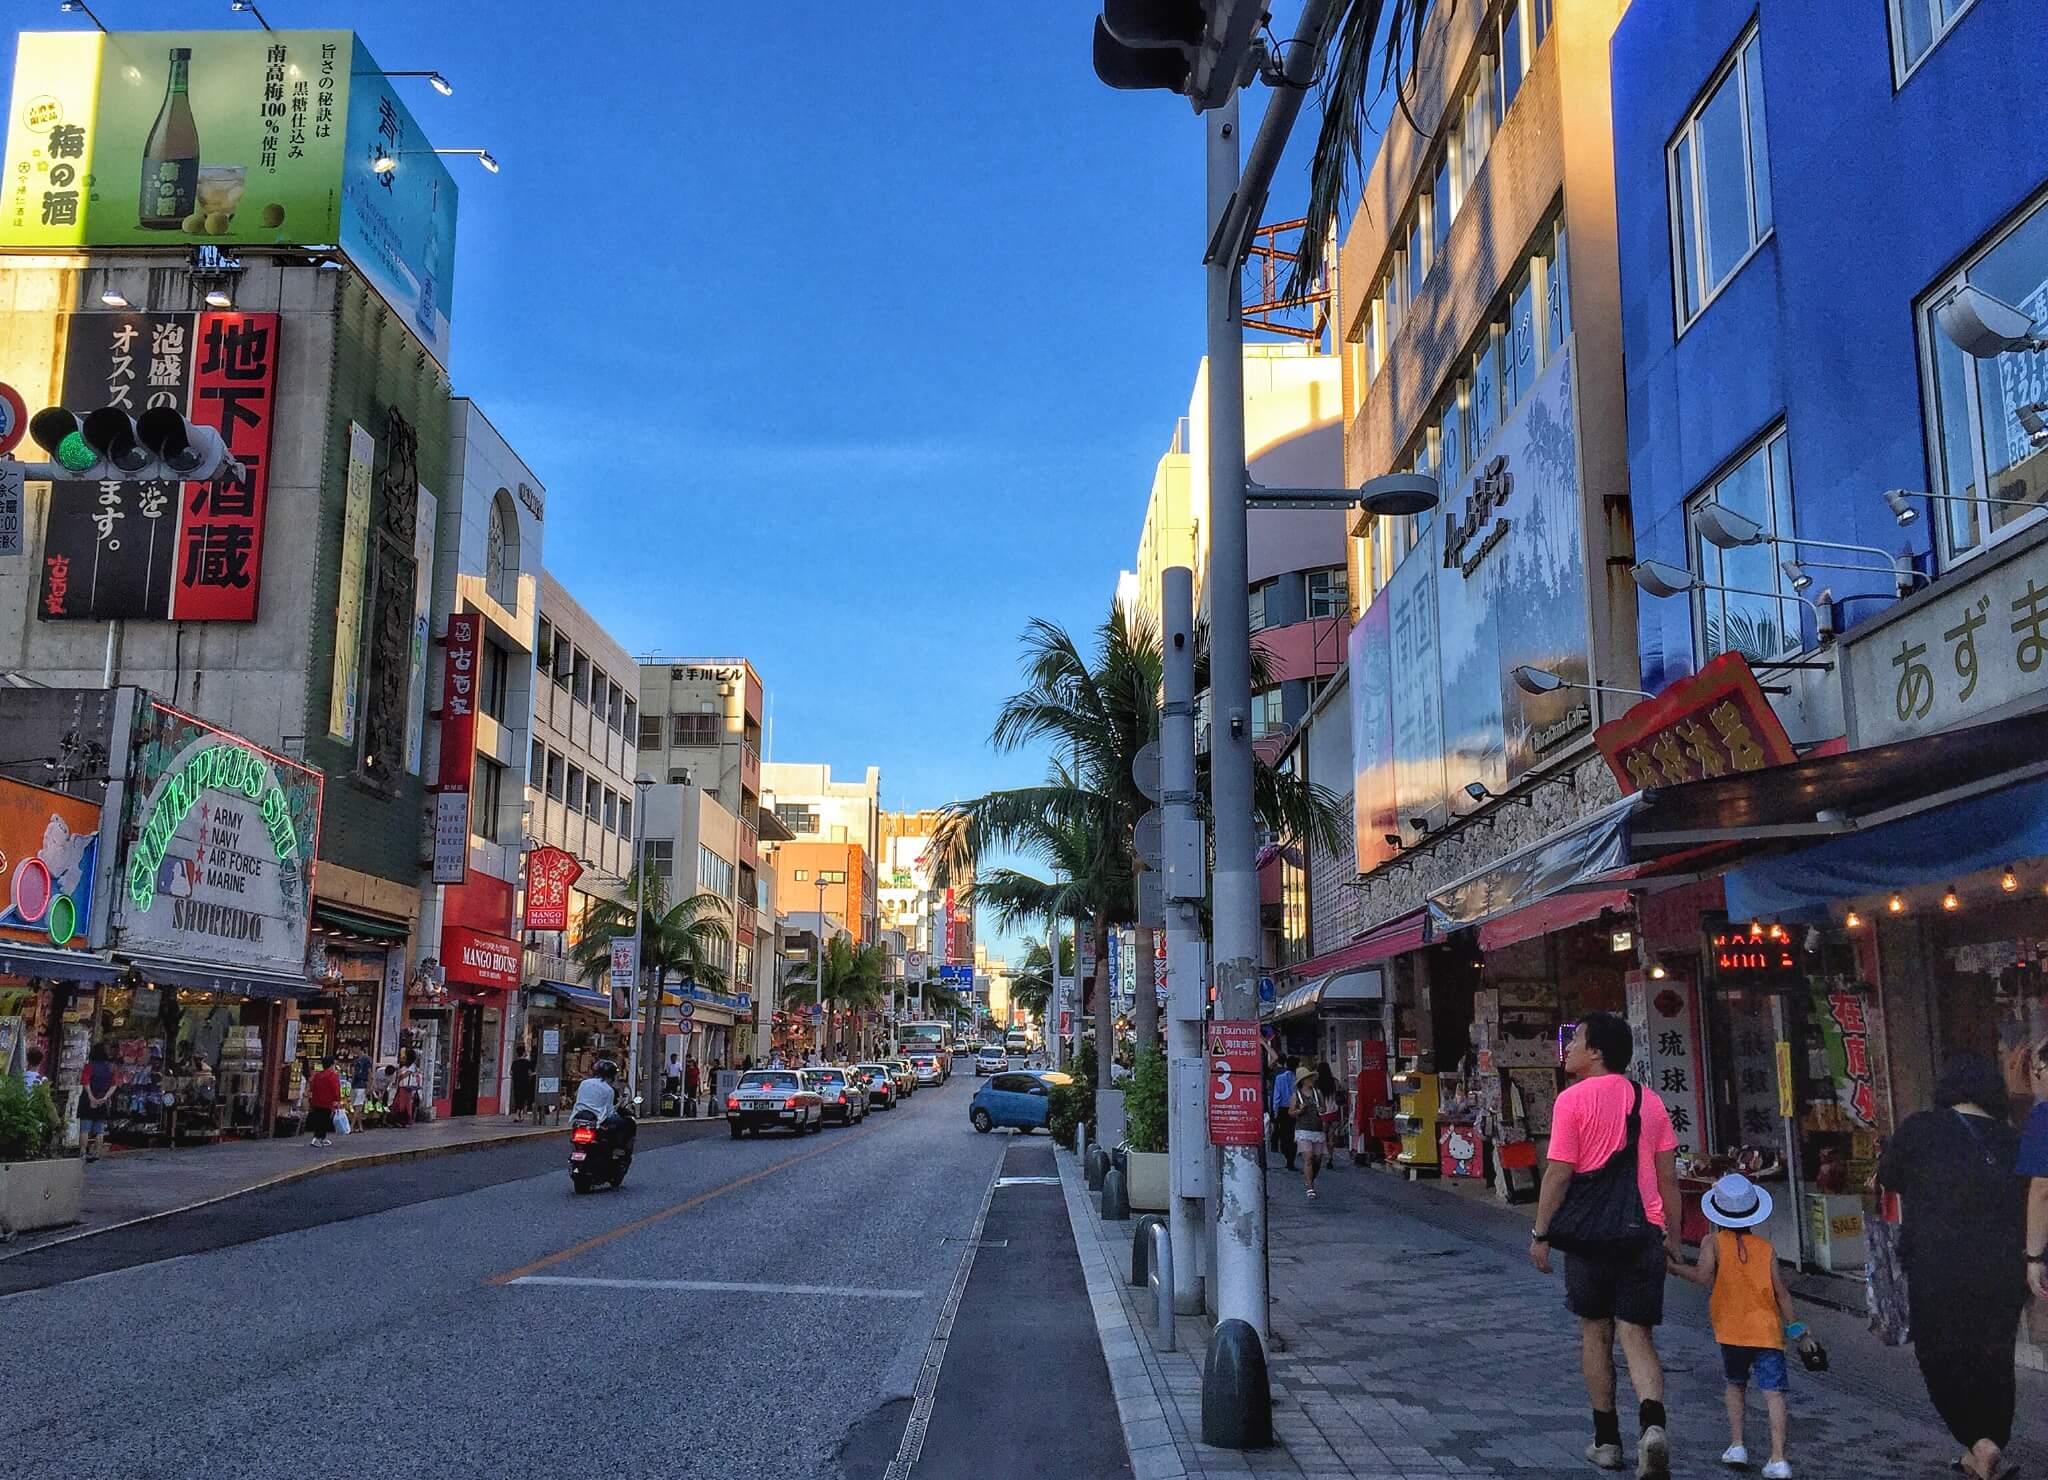 沖繩國際通最早建成於1933年，是當時連接原那霸市中心至首里市的最短路線，當地人慣稱「新縣道」。此路甫建成之時，其周圍人煙稀少。